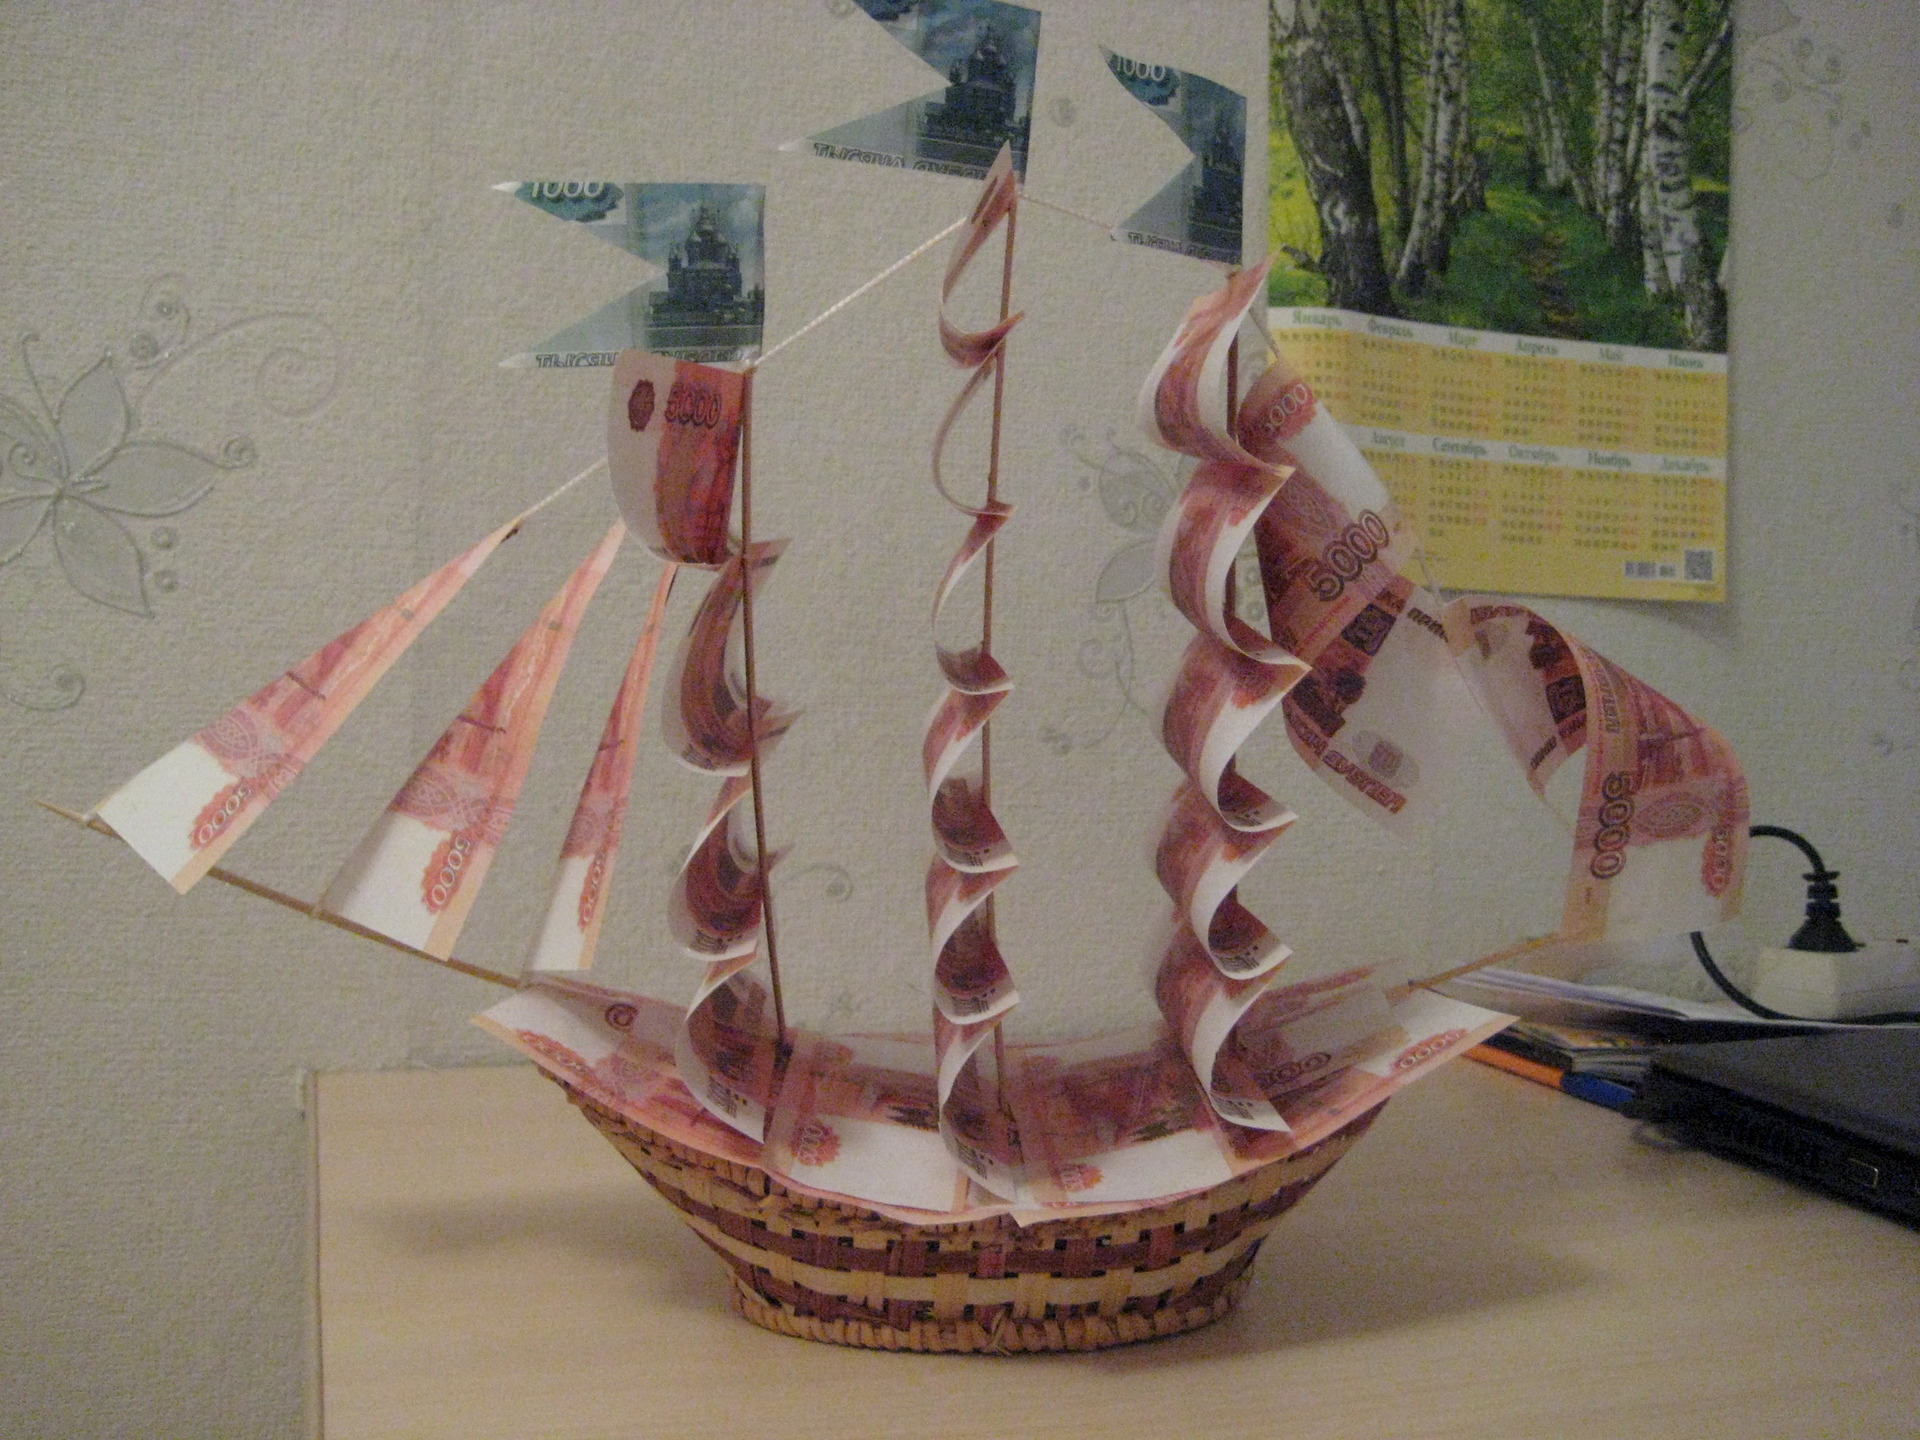 Как сделать модель корабля из дерева. Обзор постройки парусника.